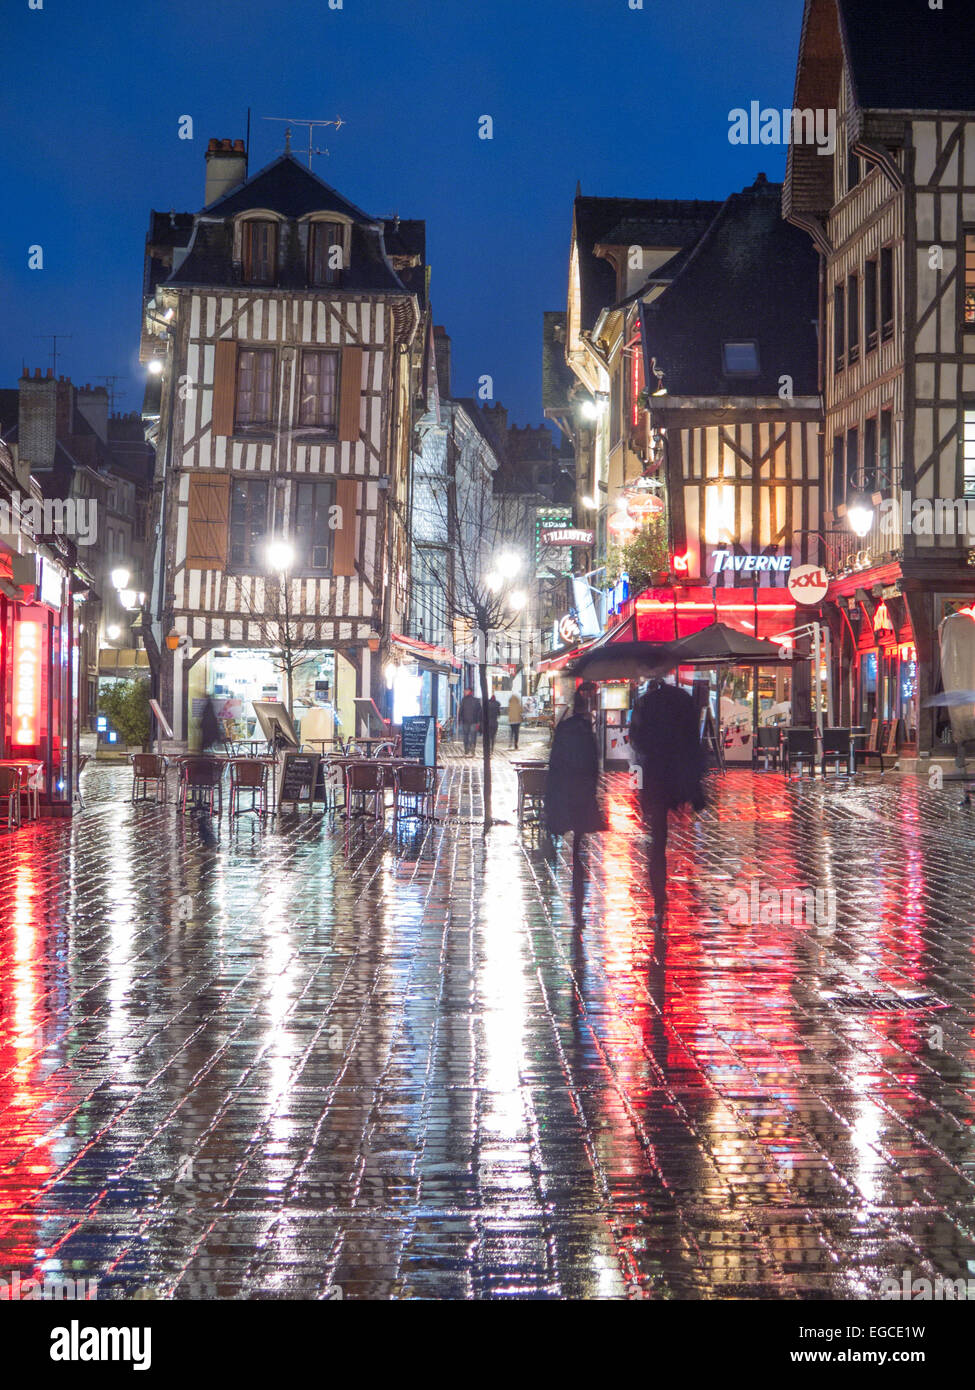 Rainy Night - Place Alexandre Israel - Troyes, France Stock Photo